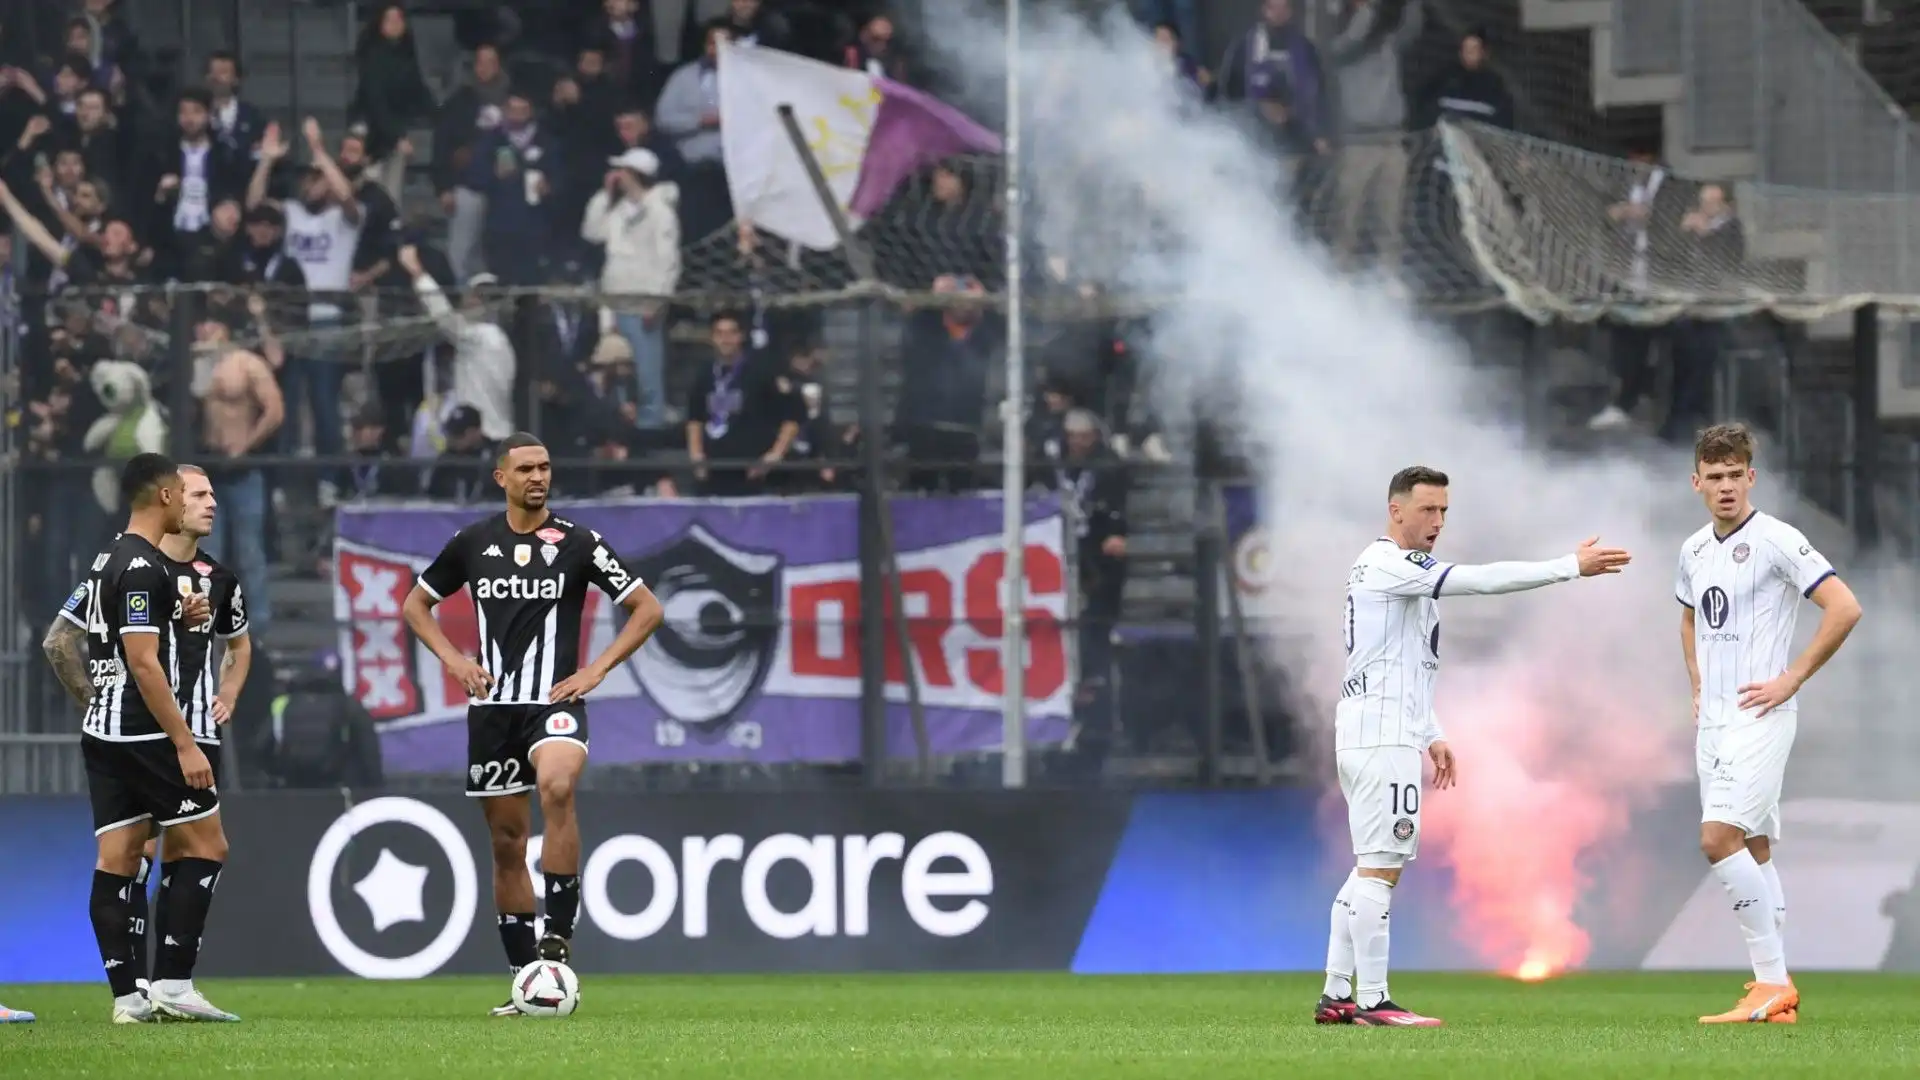 Il match tra Angers e Tolosa è stato sospeso per diversi minuti nel secondo tempo